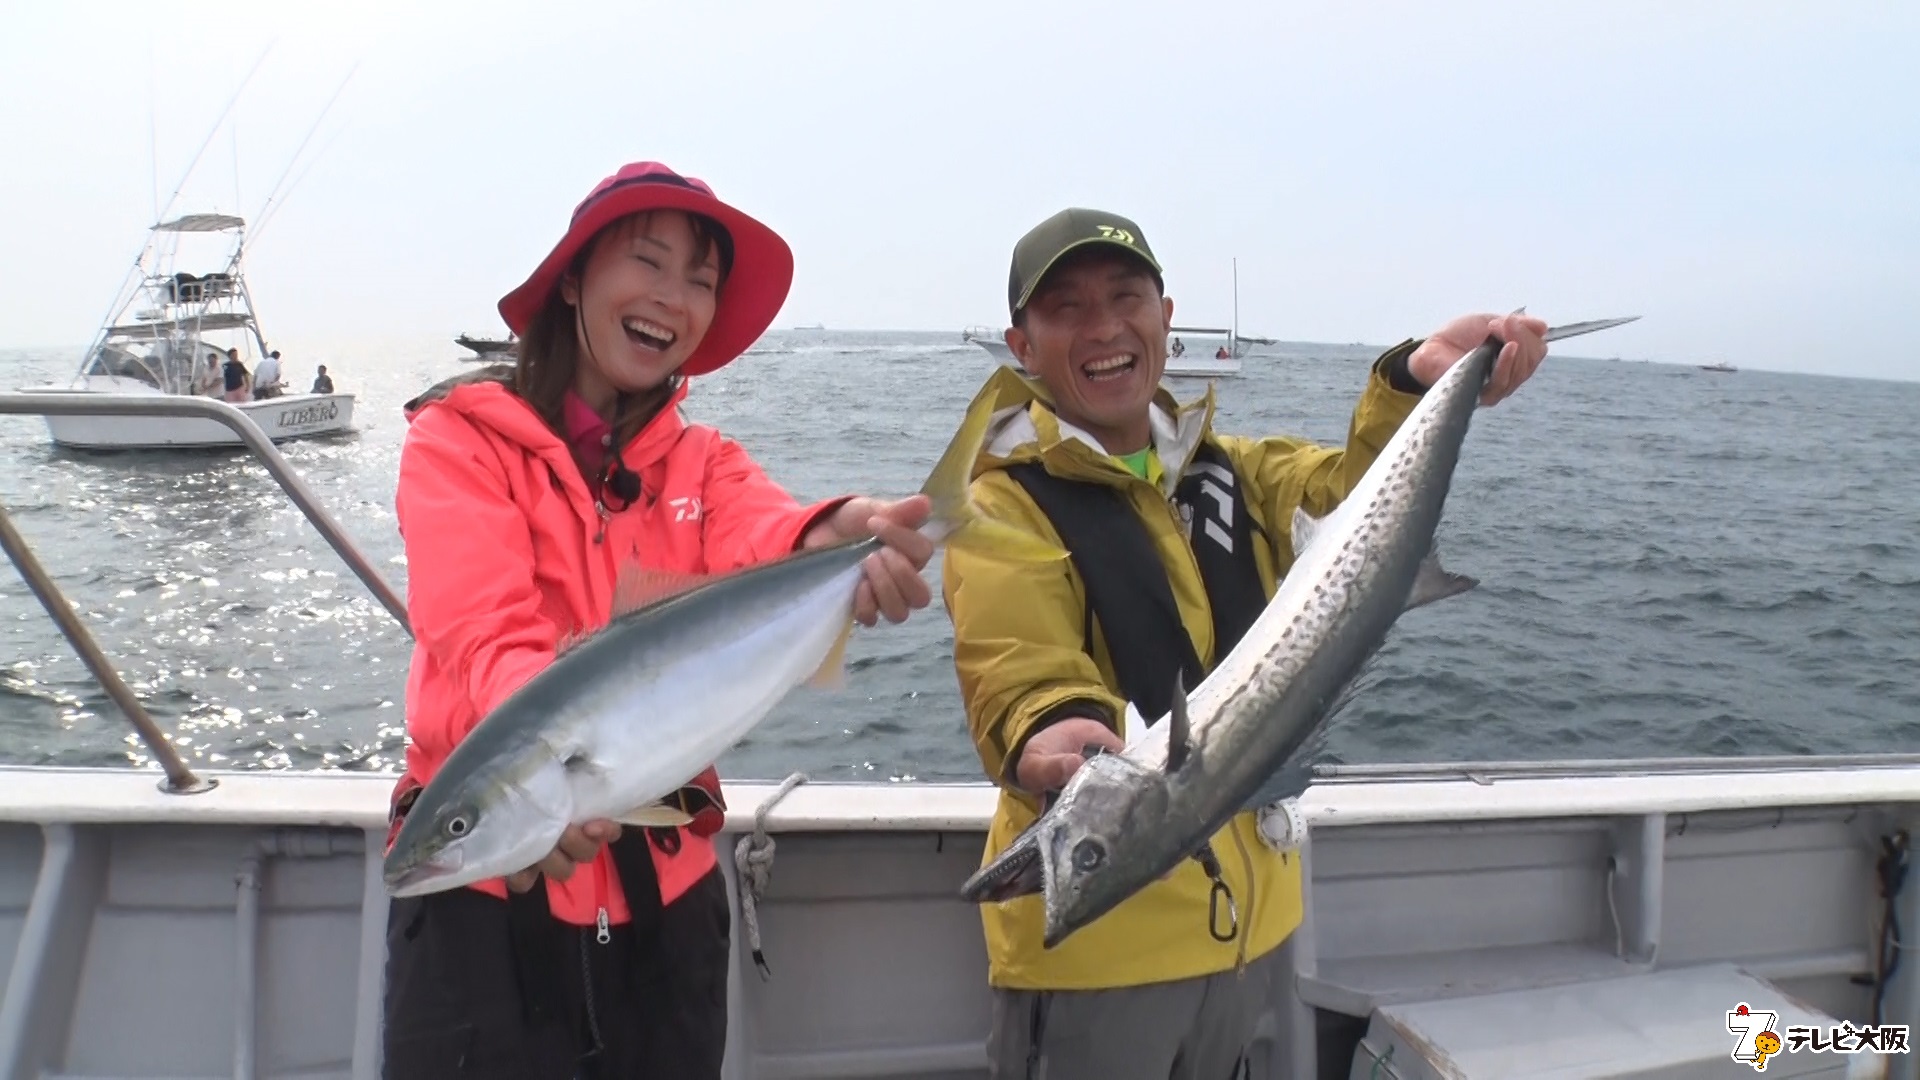 ヒラメやイナダ 泳がせ釣り で大爆釣 伊勢湾で沖釣りを楽しもう テレビ大阪株式会社のプレスリリース